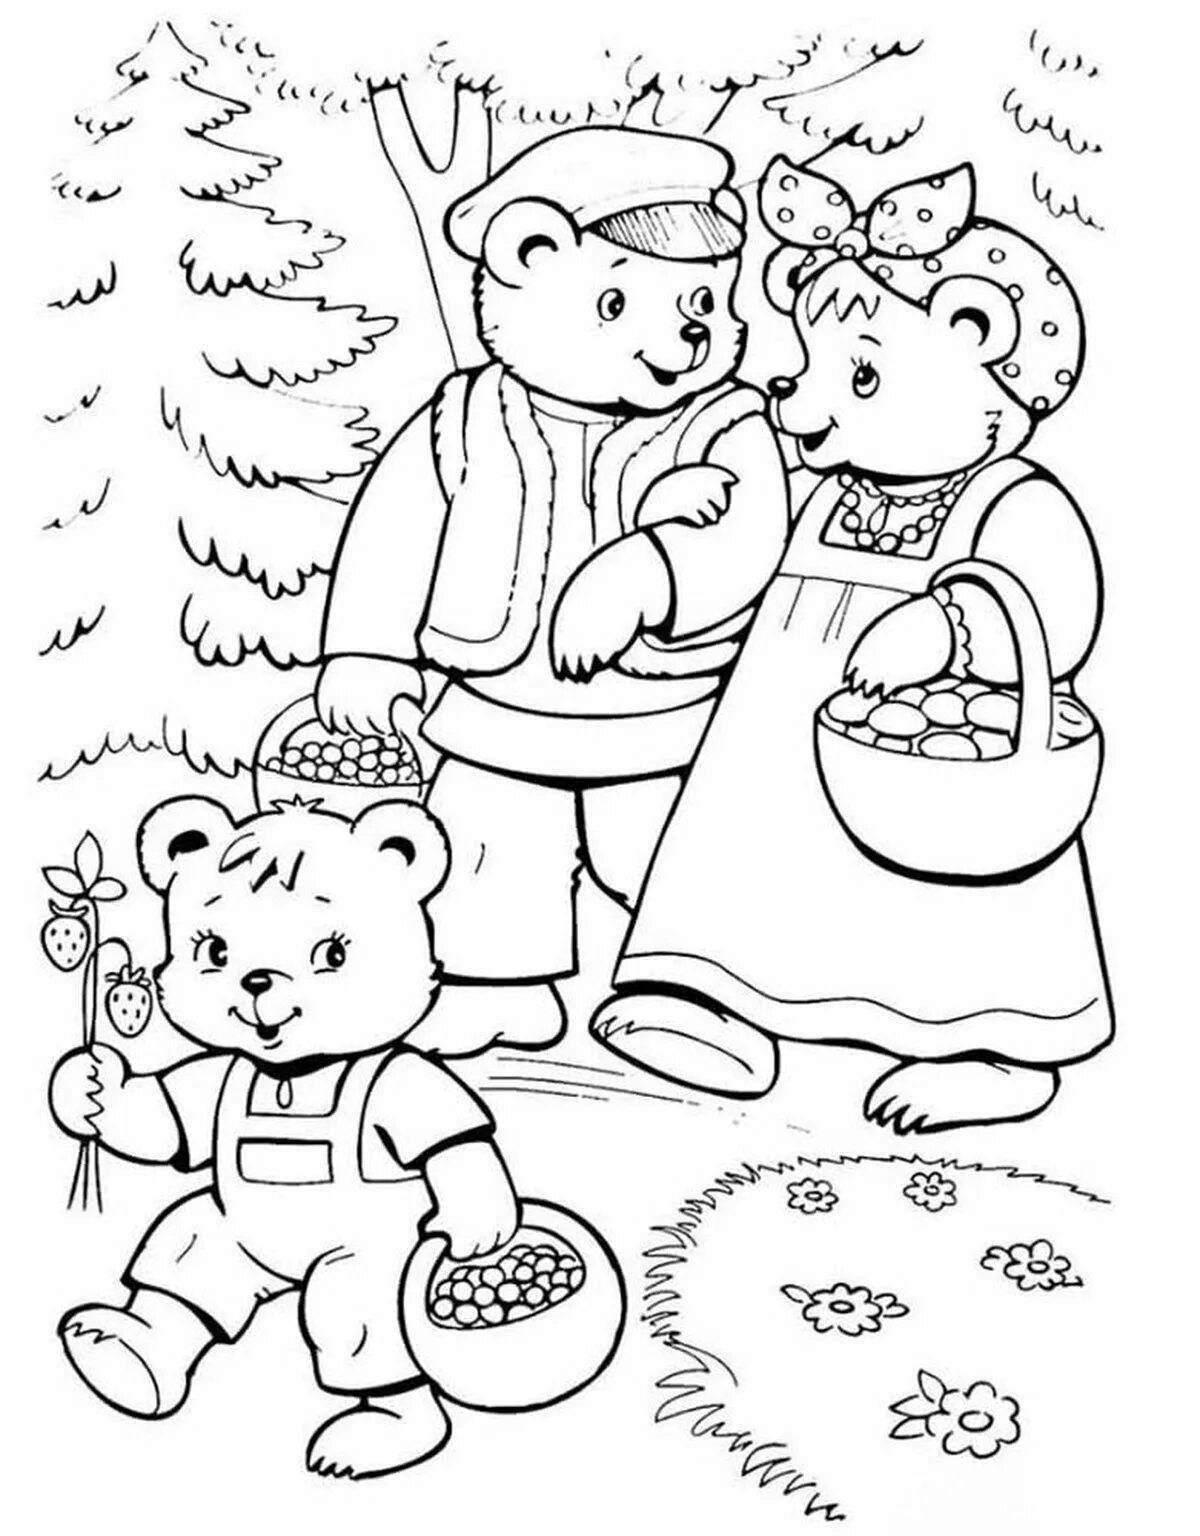 Картинки раскраски к сказкам. Маша и три медведя сказка раскраска. Раскраска. Три медведя. Три медведя раскраска для детей. Раскраска к сказке три медведя для детей.